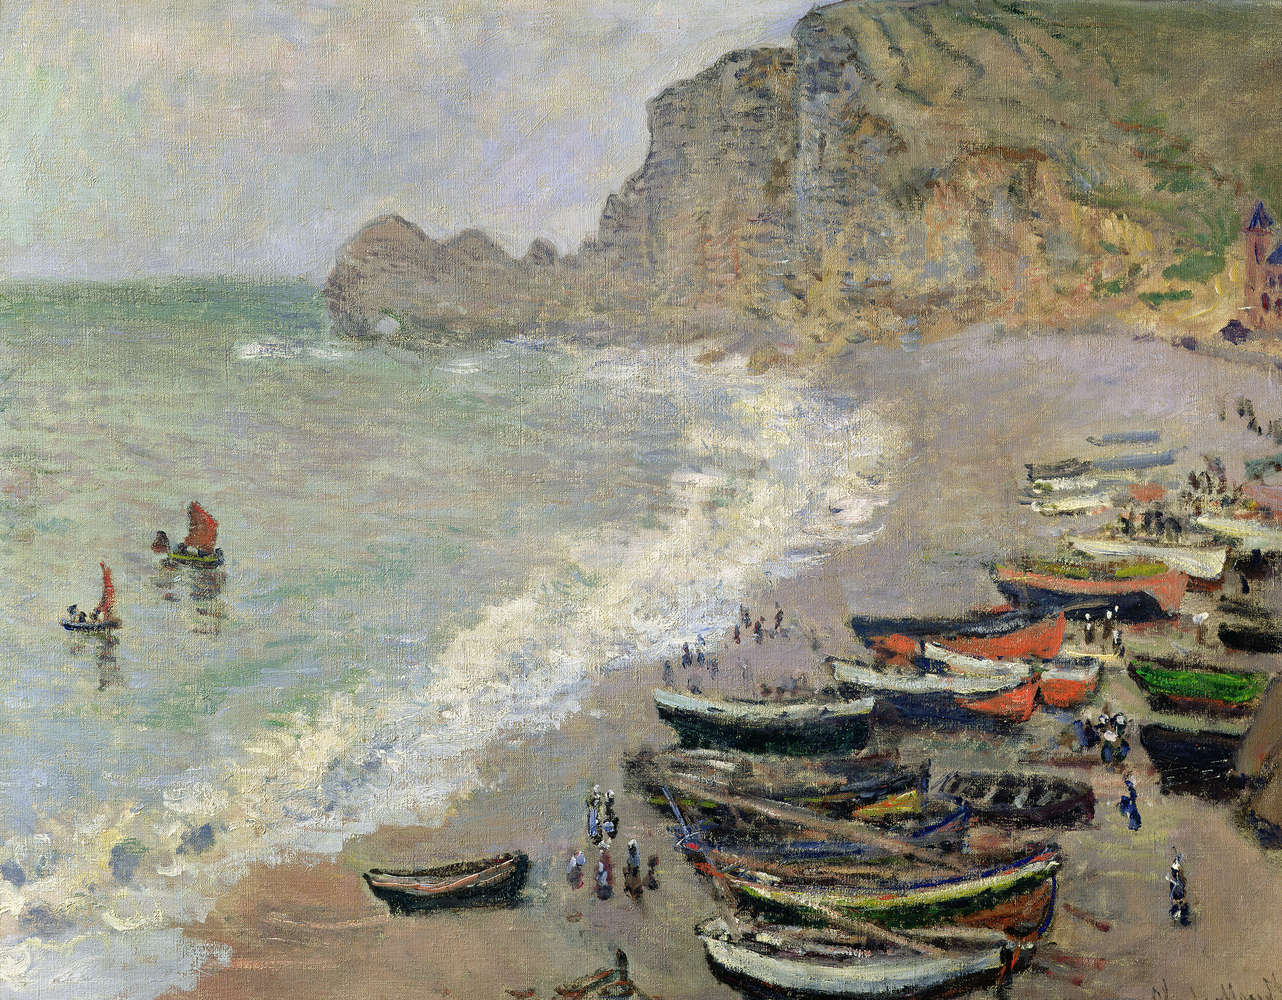             Papier peint panoramique "Etretat, la plage et la porte d'Amont" de Claude Monet
        